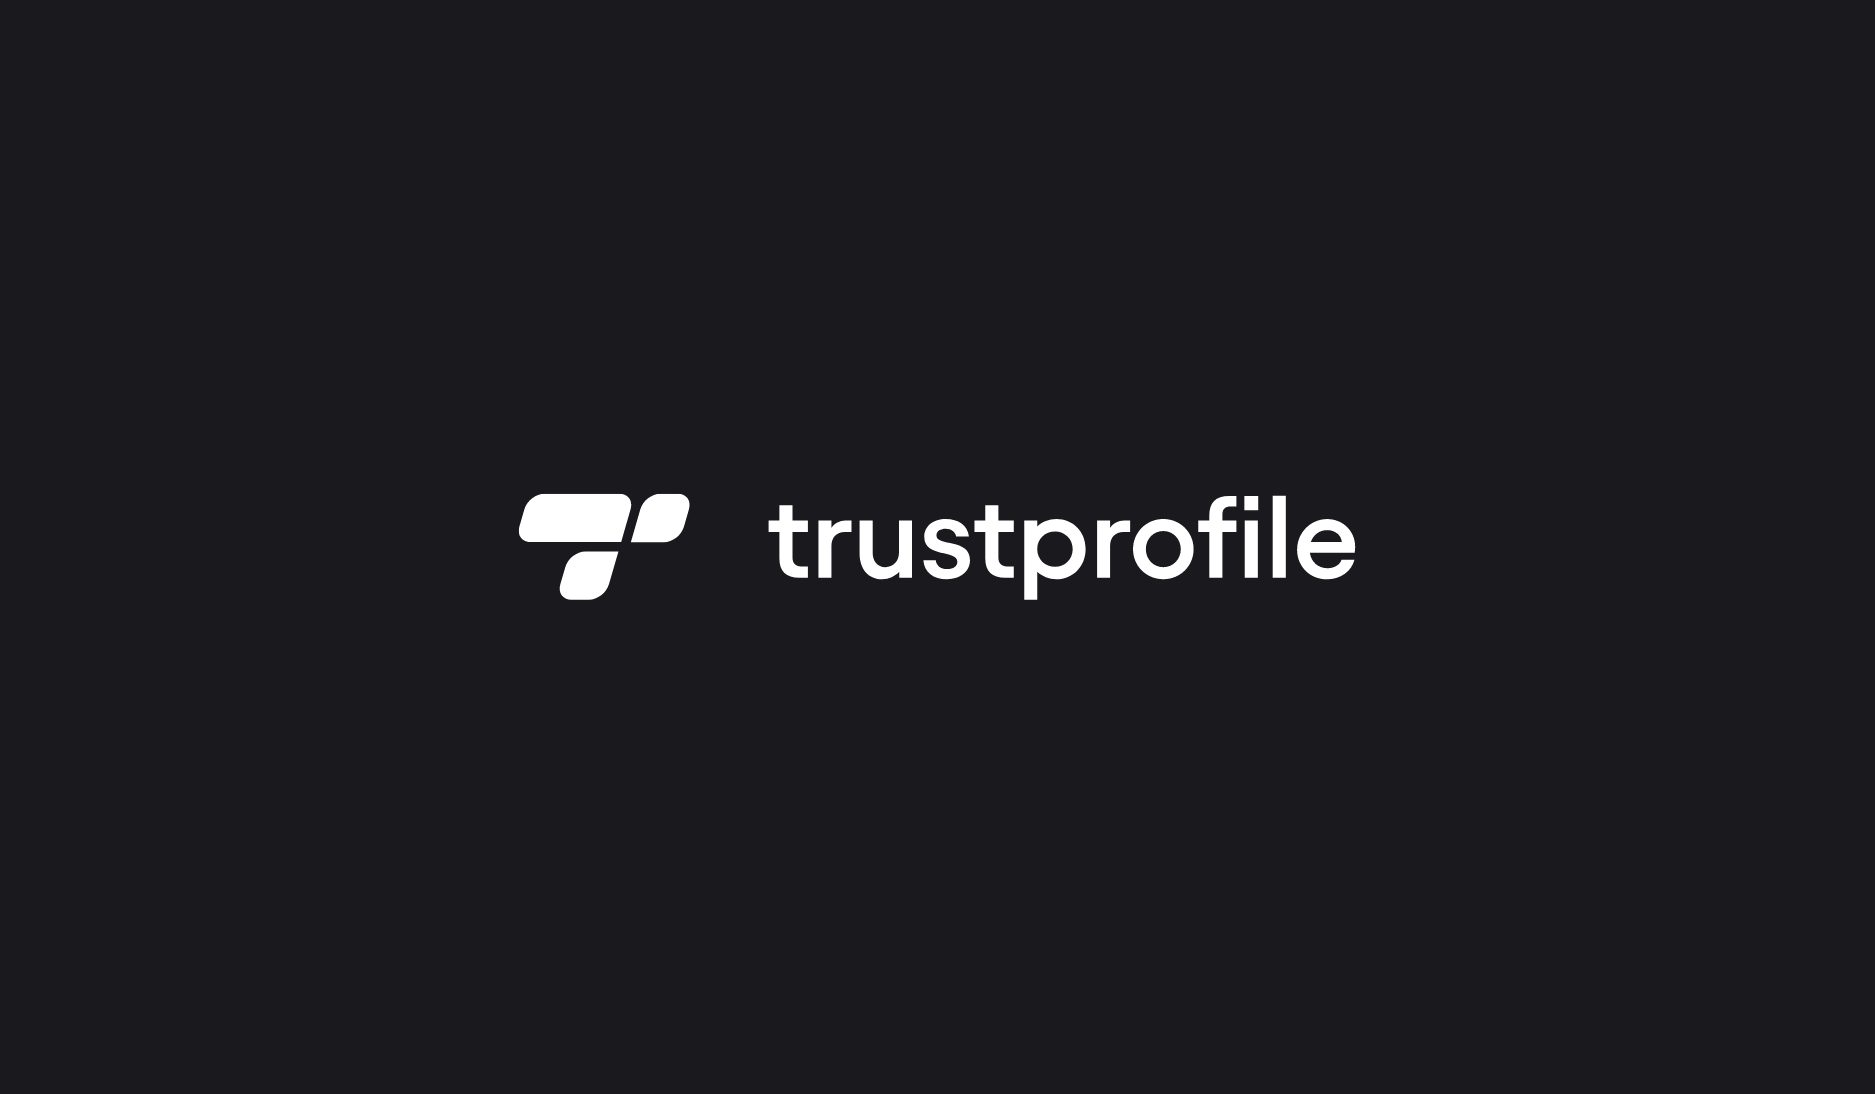 Trustprofile